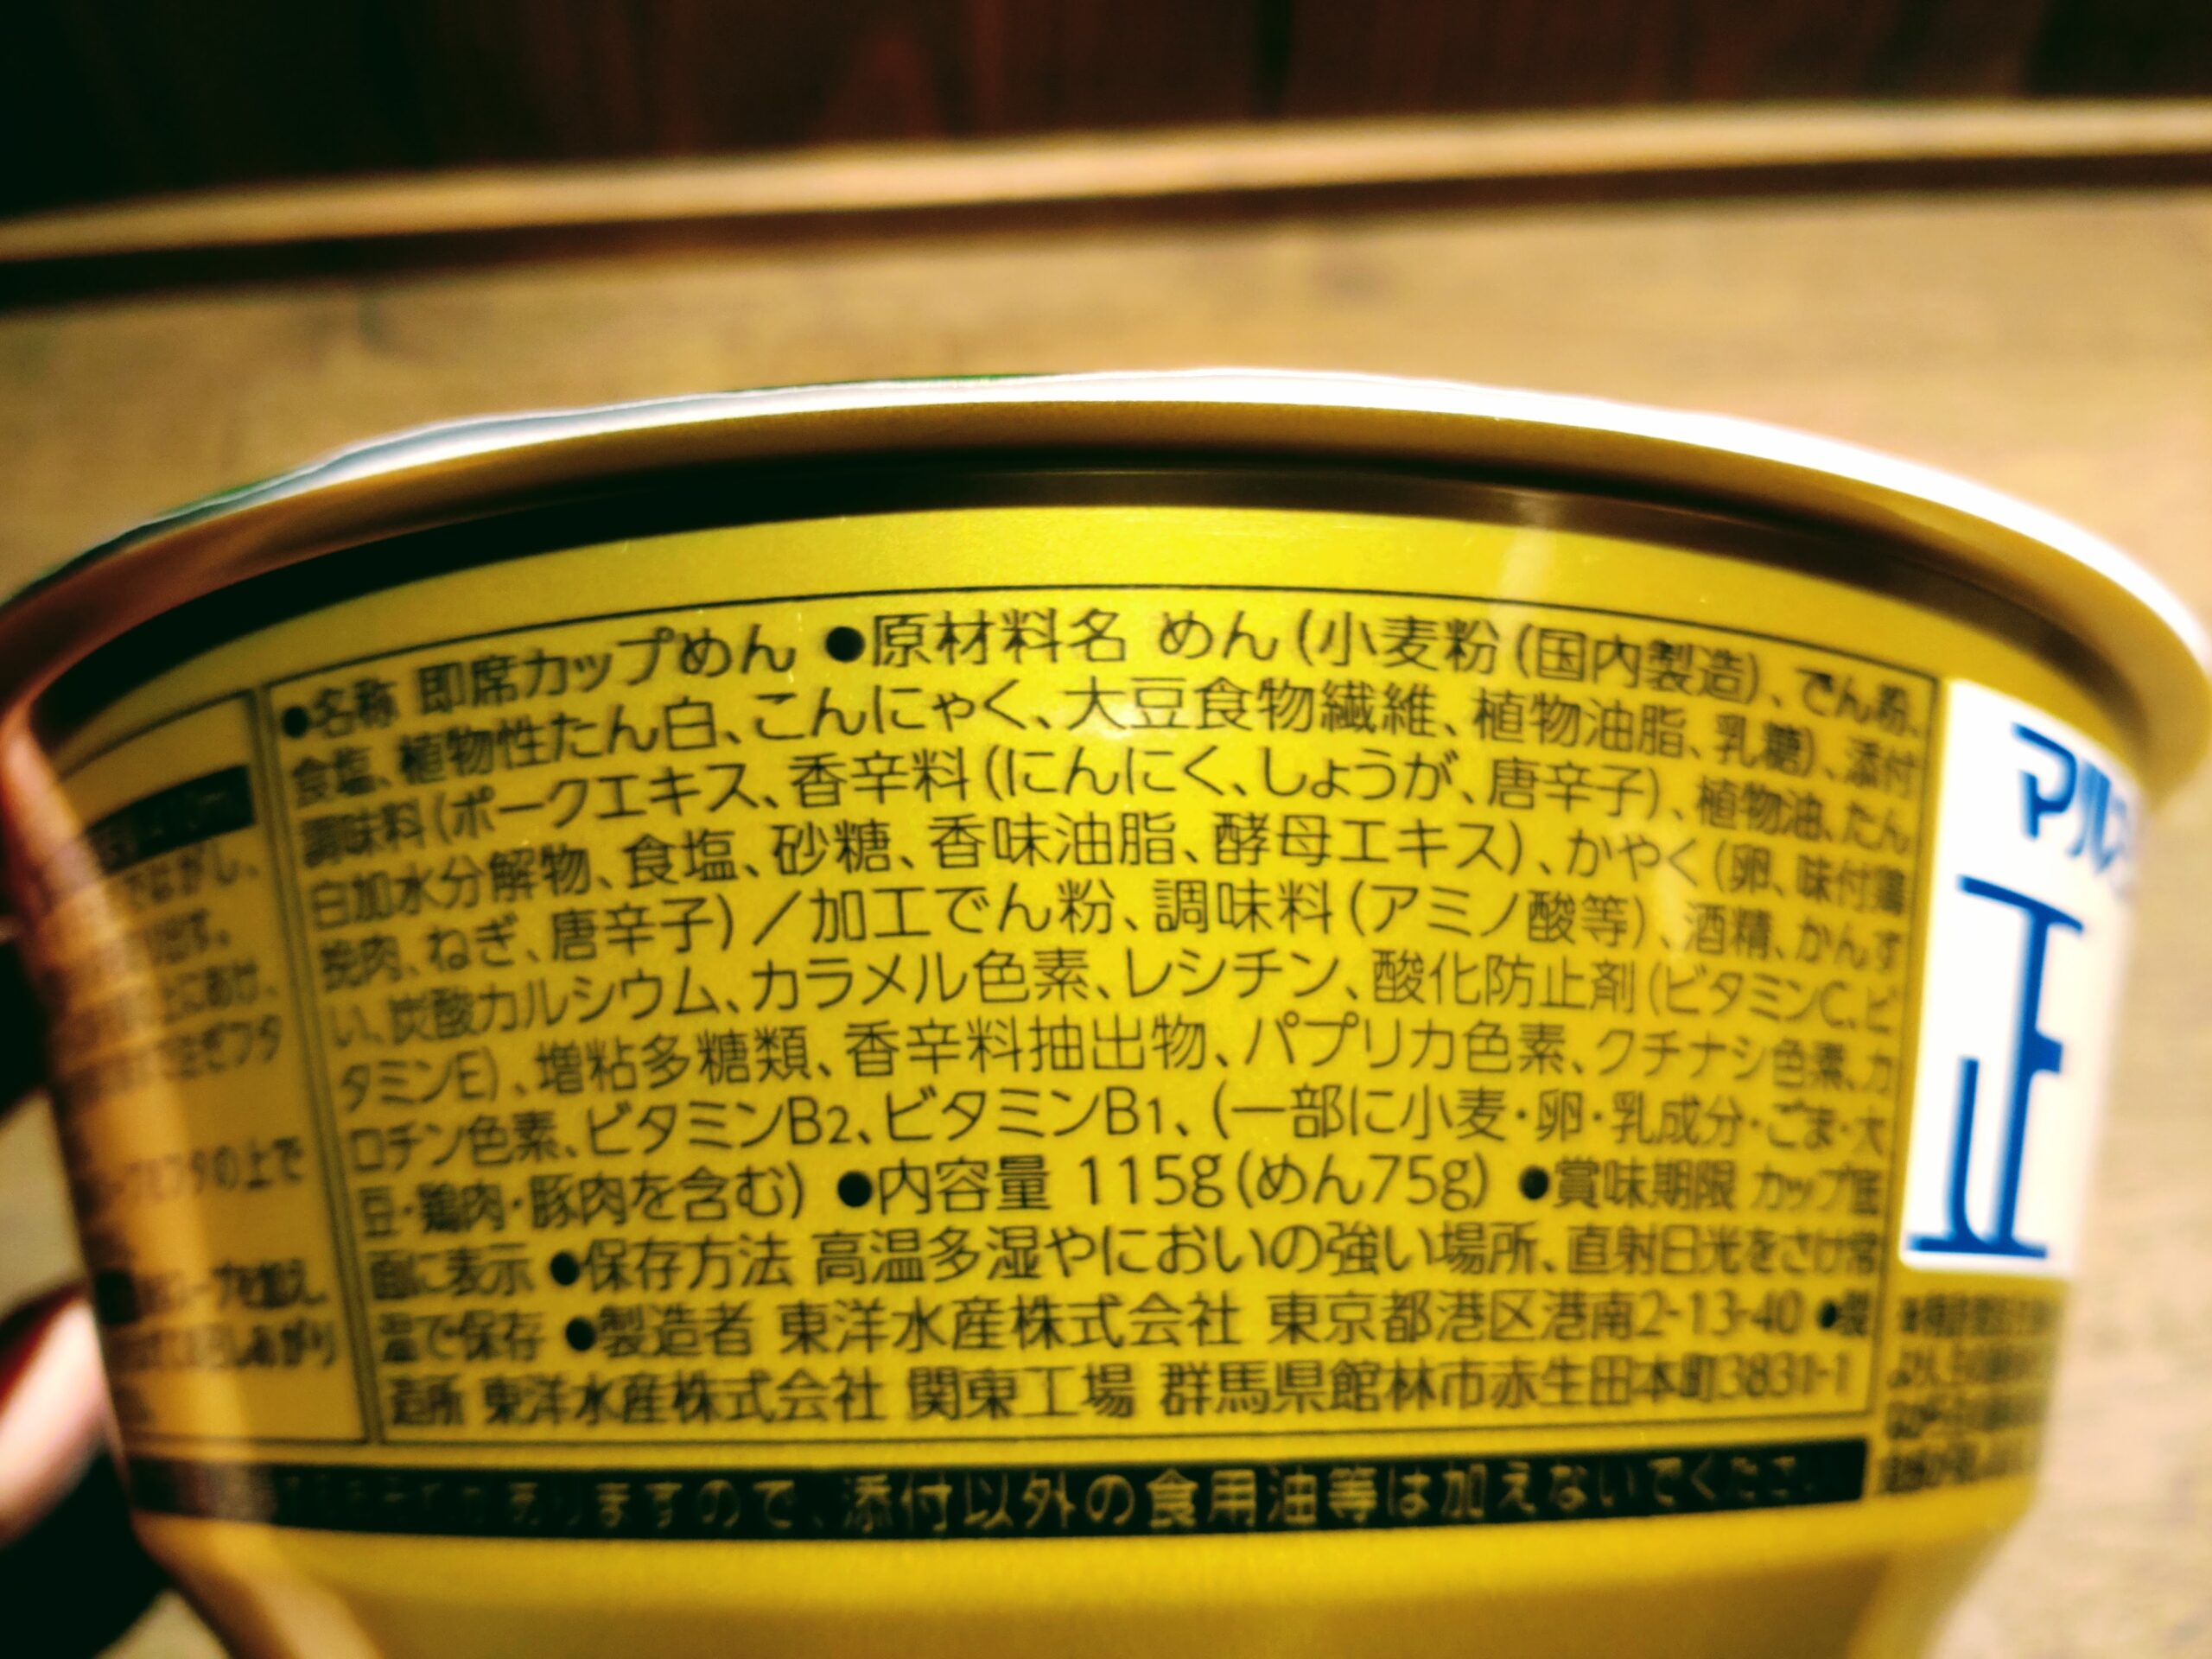 マルちゃん正麺 カップ ニンニク塩担々麺の原材料名と内容量